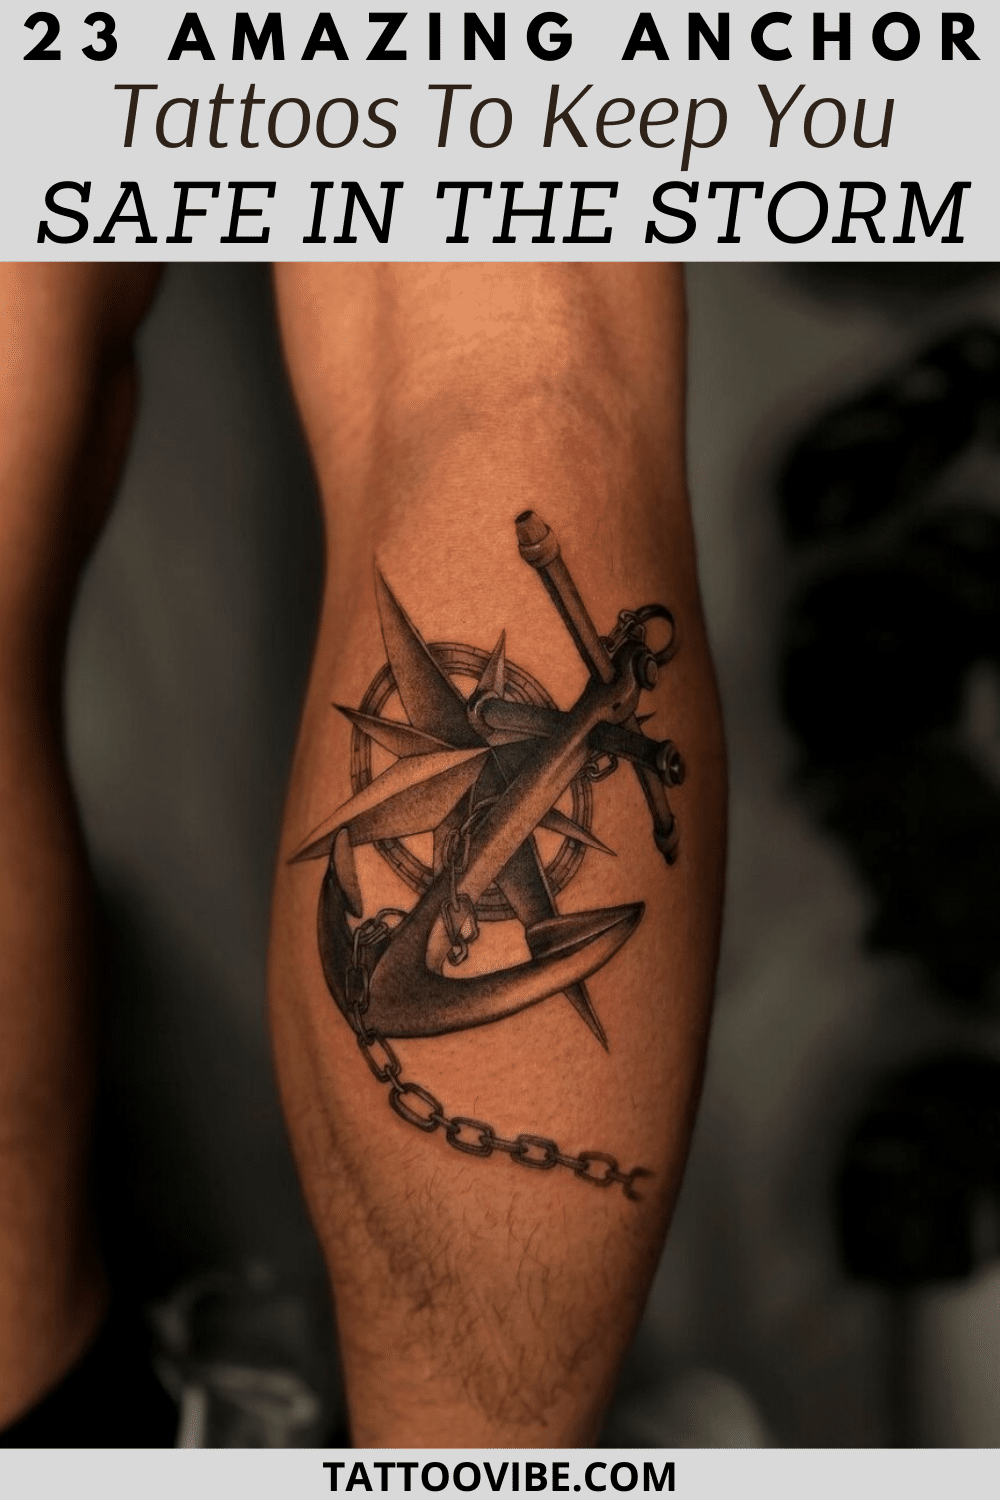 23 incredibili tatuaggi con l'ancora per tenervi al sicuro nella tempesta